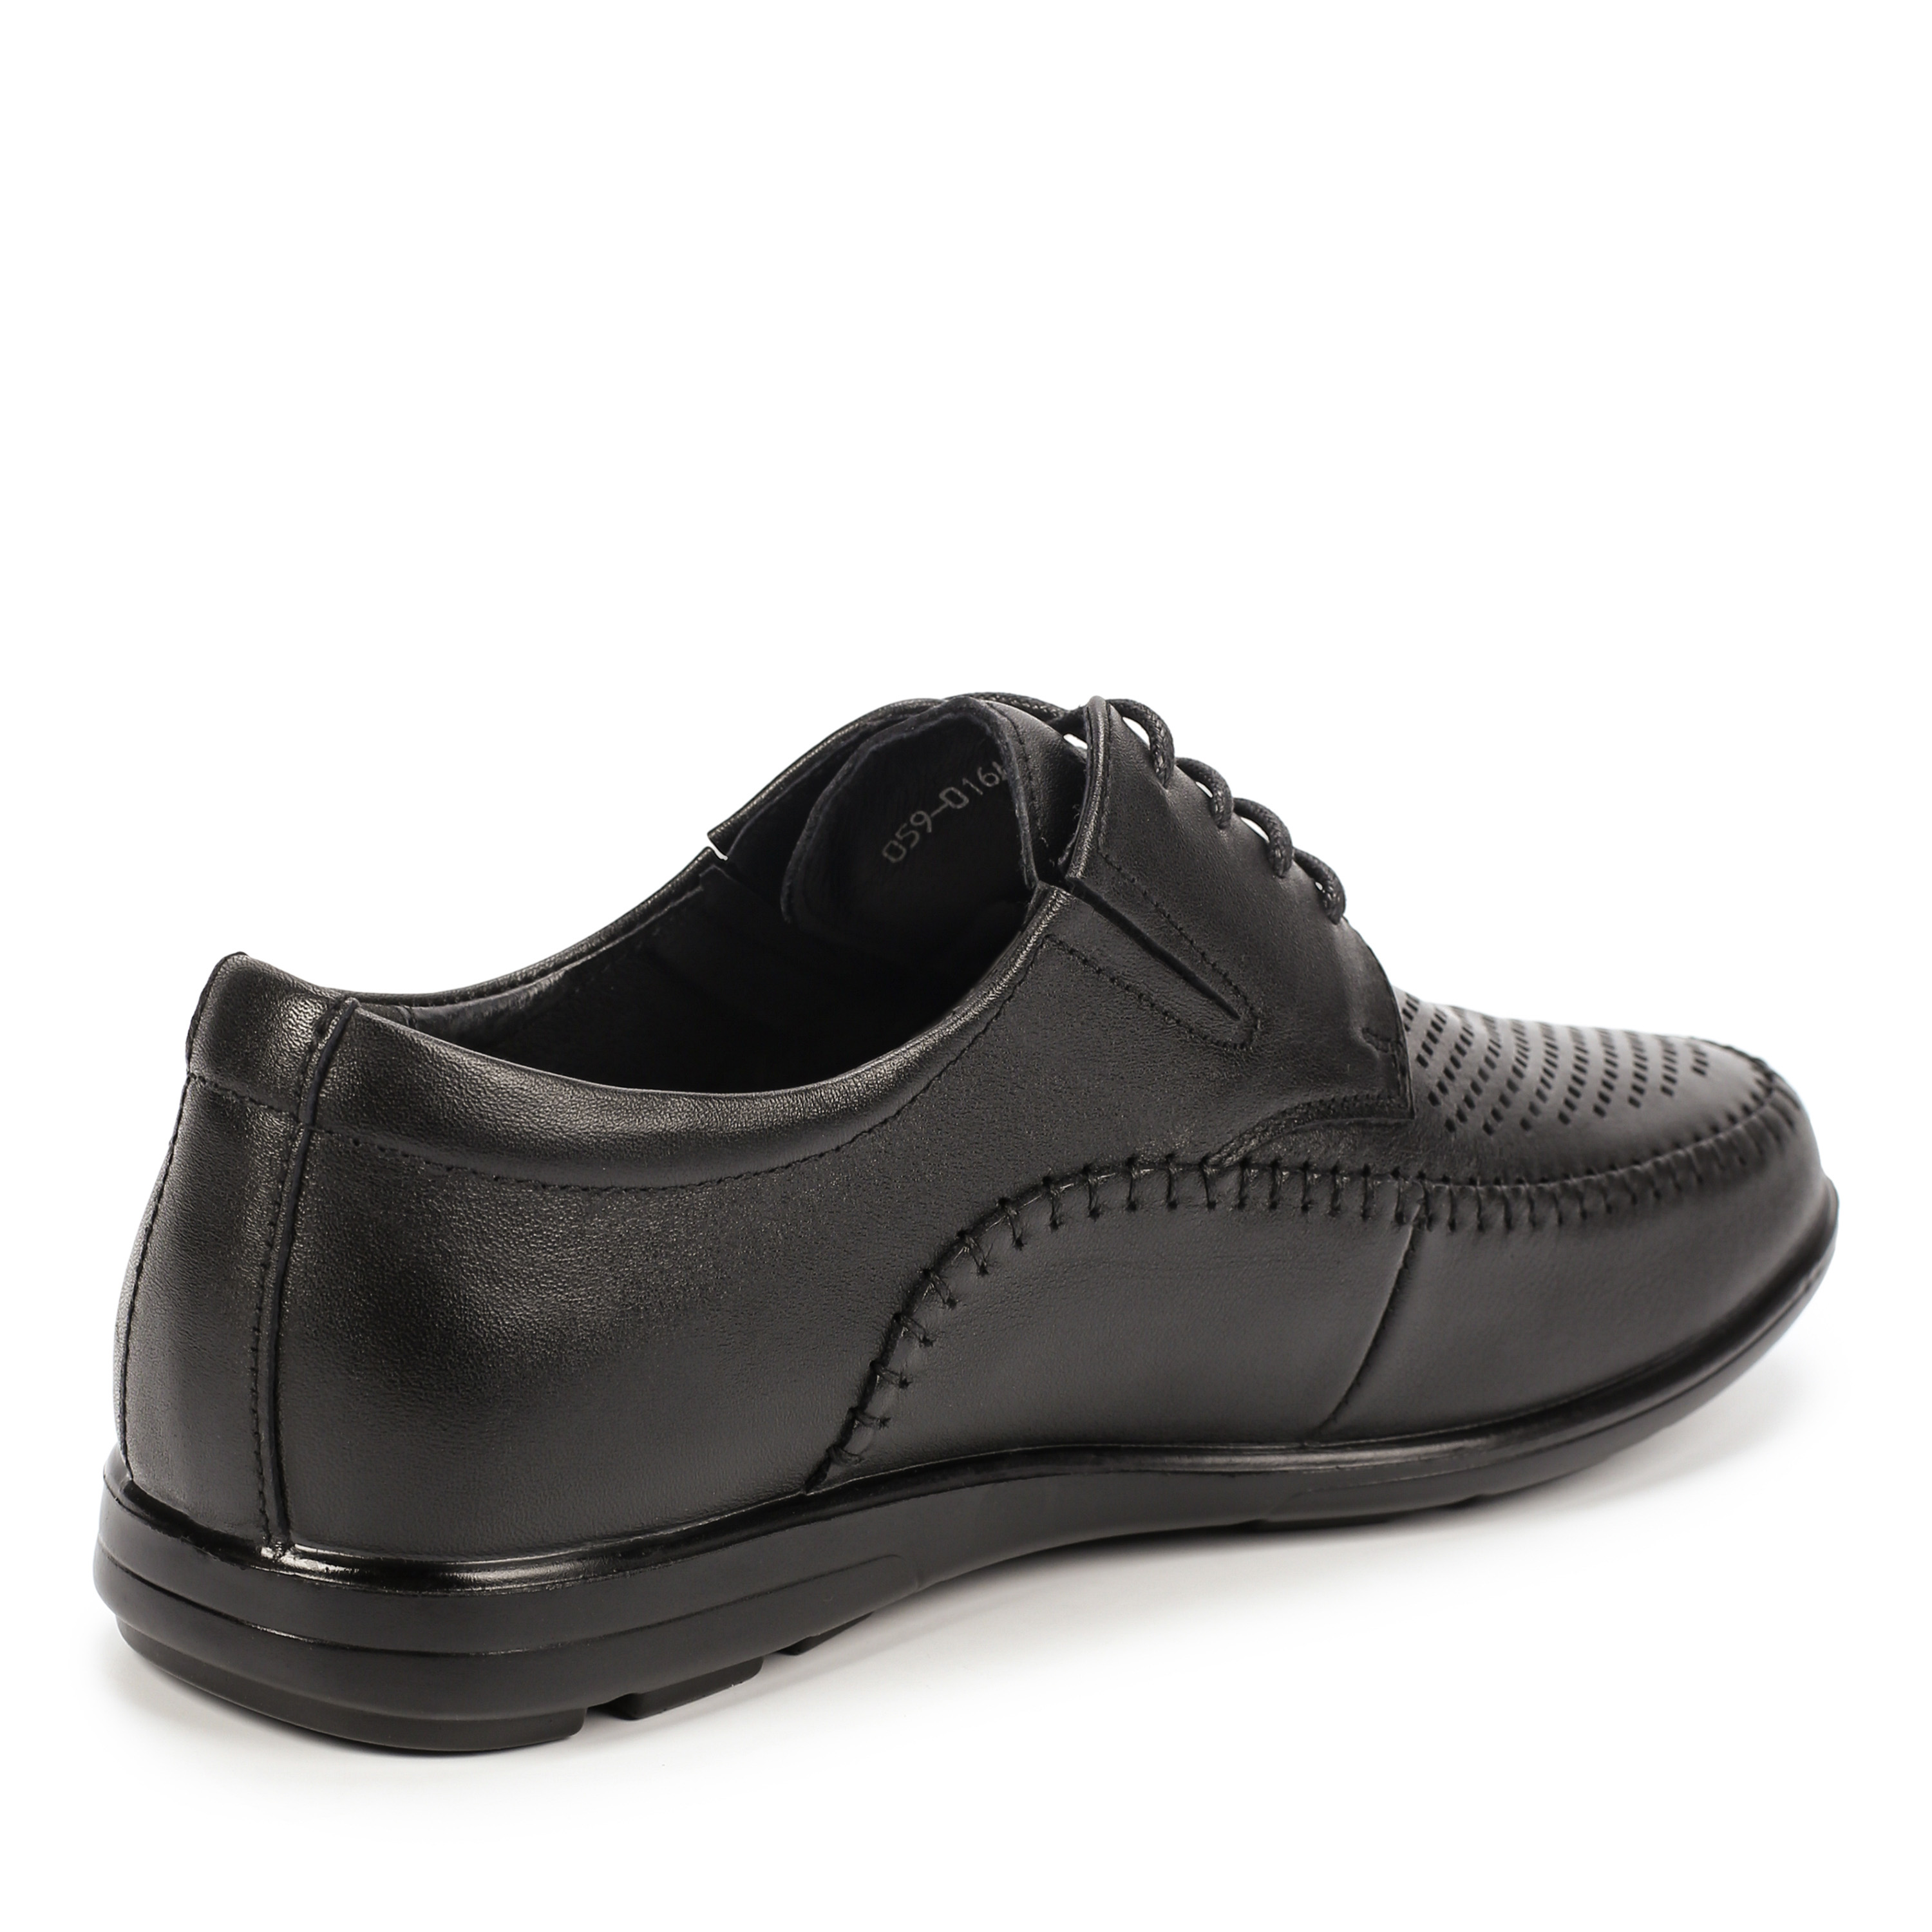 Туфли MUNZ Shoes 059-016A-1102 059-016A-1102, цвет черный, размер 40 полуботинки - фото 3